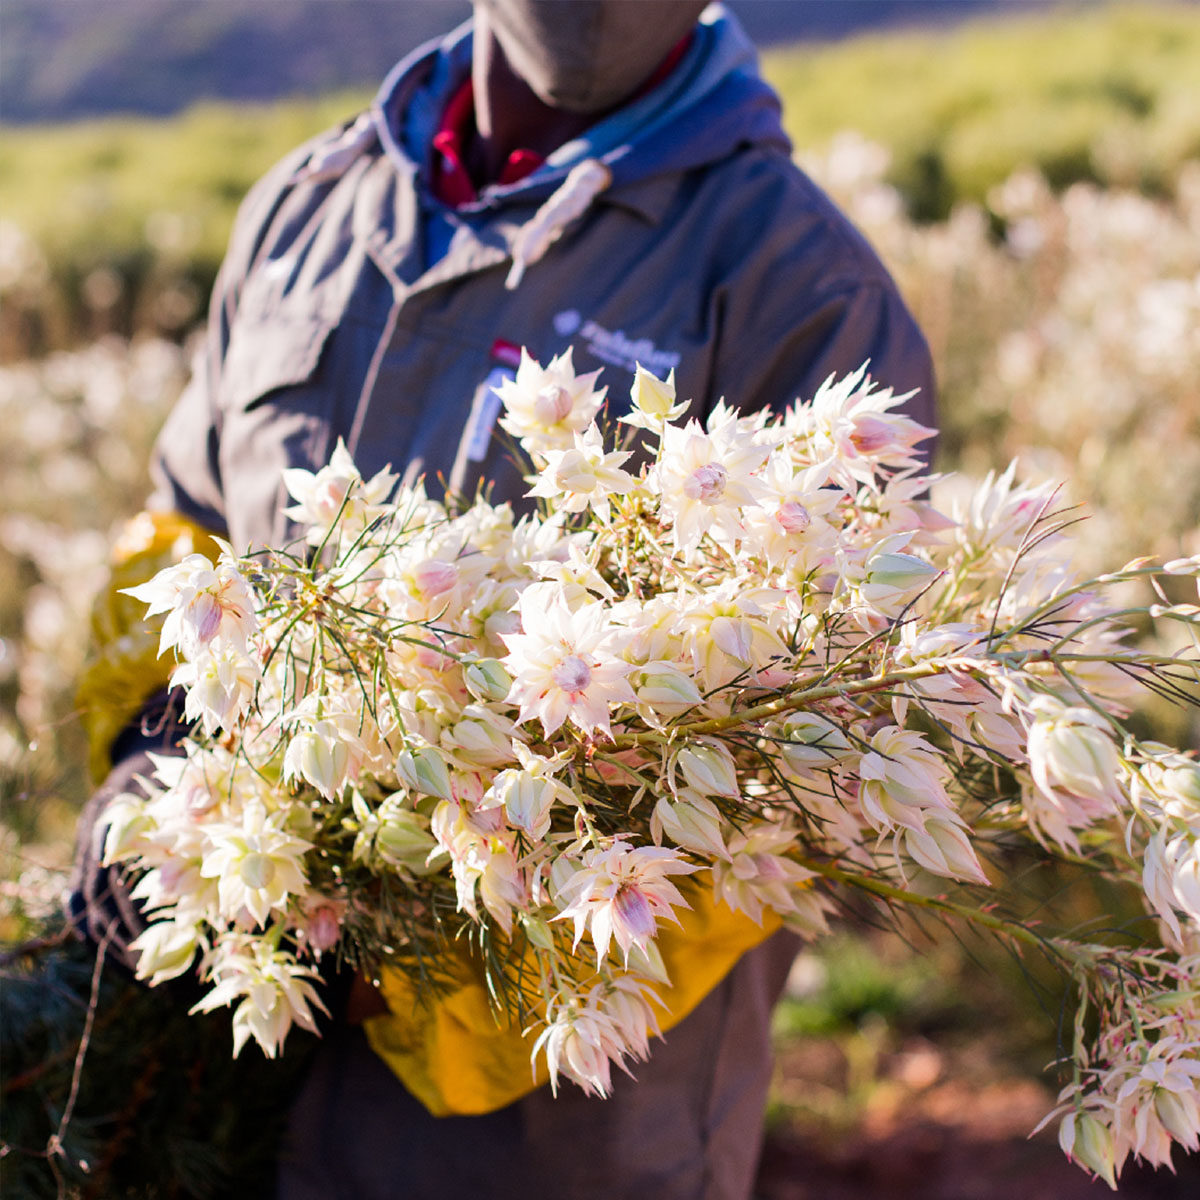 Zuluflora Protea Blushing Bride - on Thursd